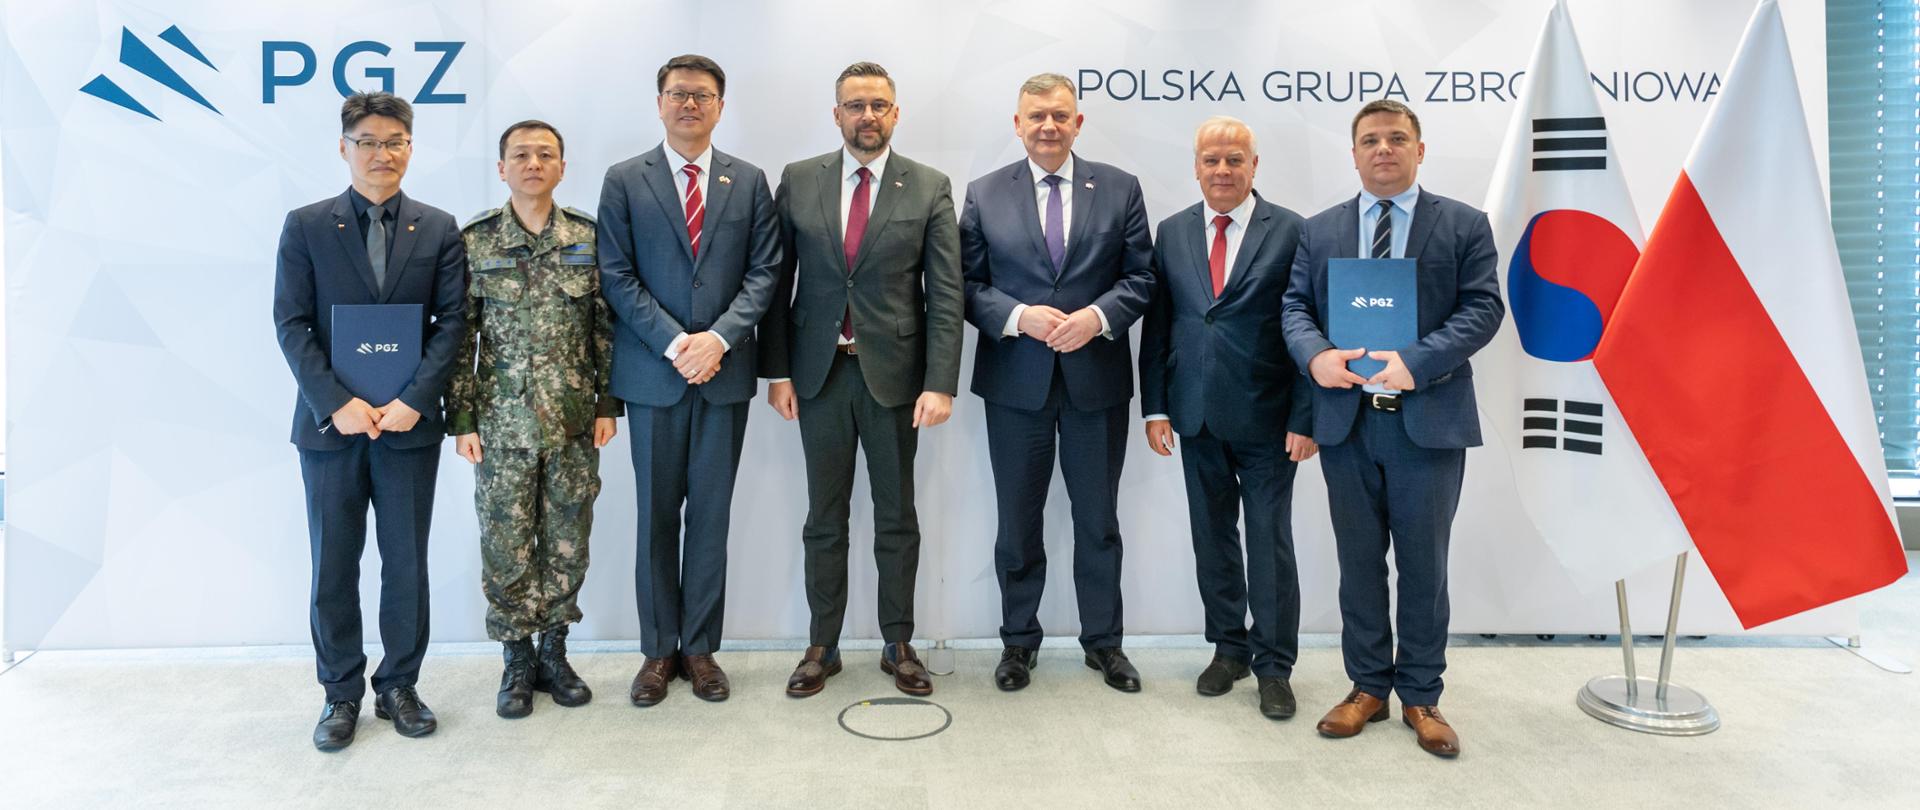 Na zdjęciu stoi siedmiu mężczyzn. W tle ścianka z napisem Polska Grupa Zbrojeniowa i logotyp PGZ. Z prawej strony flagi - Polski i Korei Południowej.